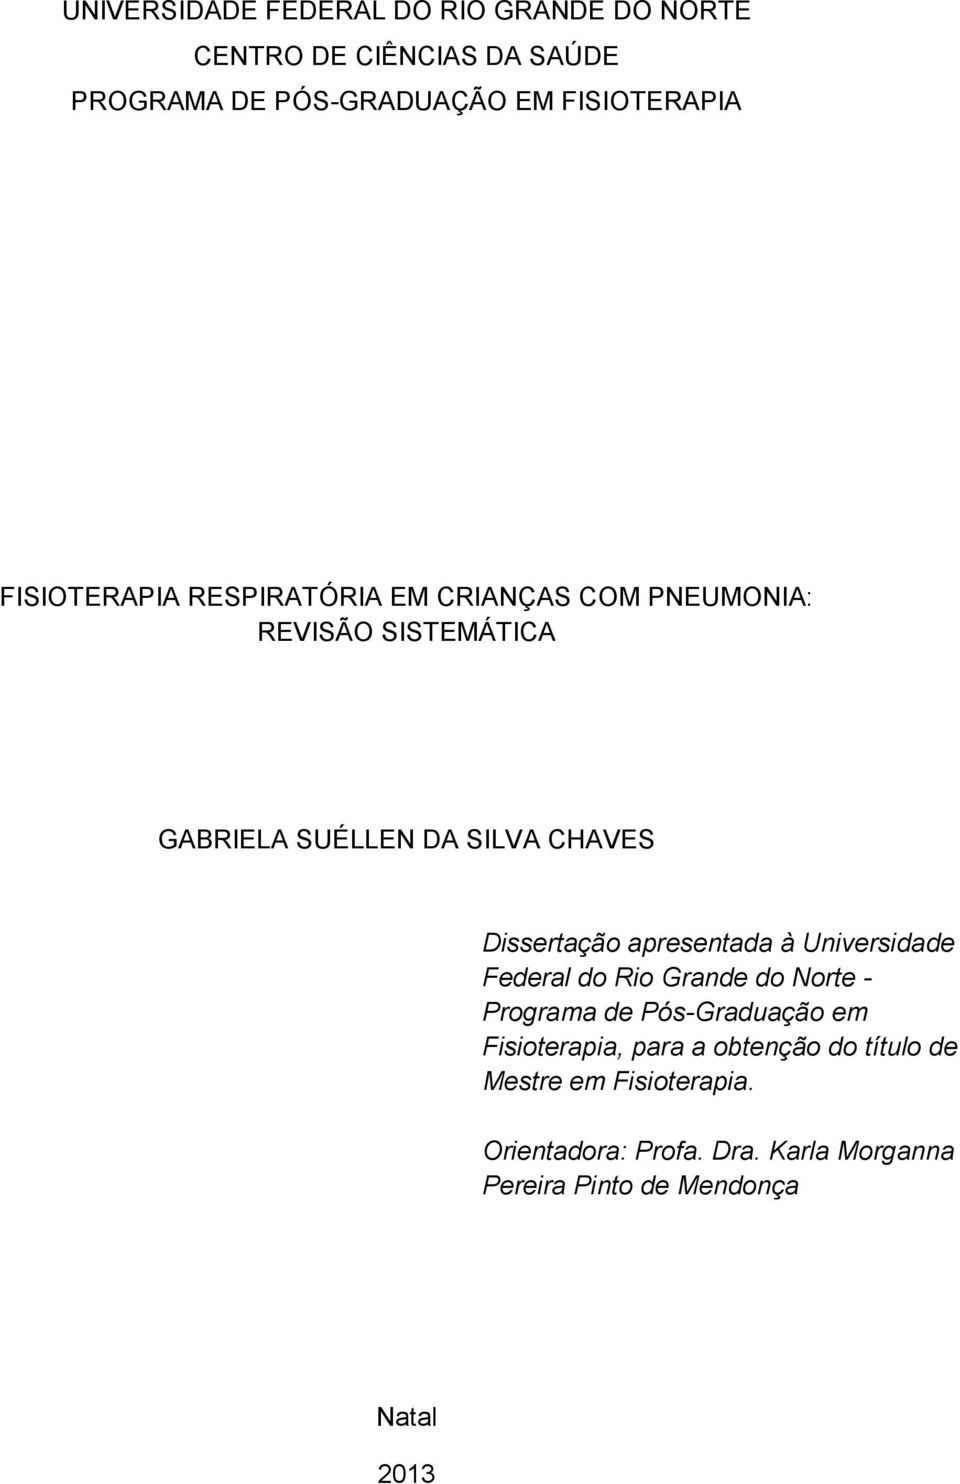 Dissertação apresentada à Universidade Federal do Rio Grande do Norte - Programa de Pós-Graduação em Fisioterapia,